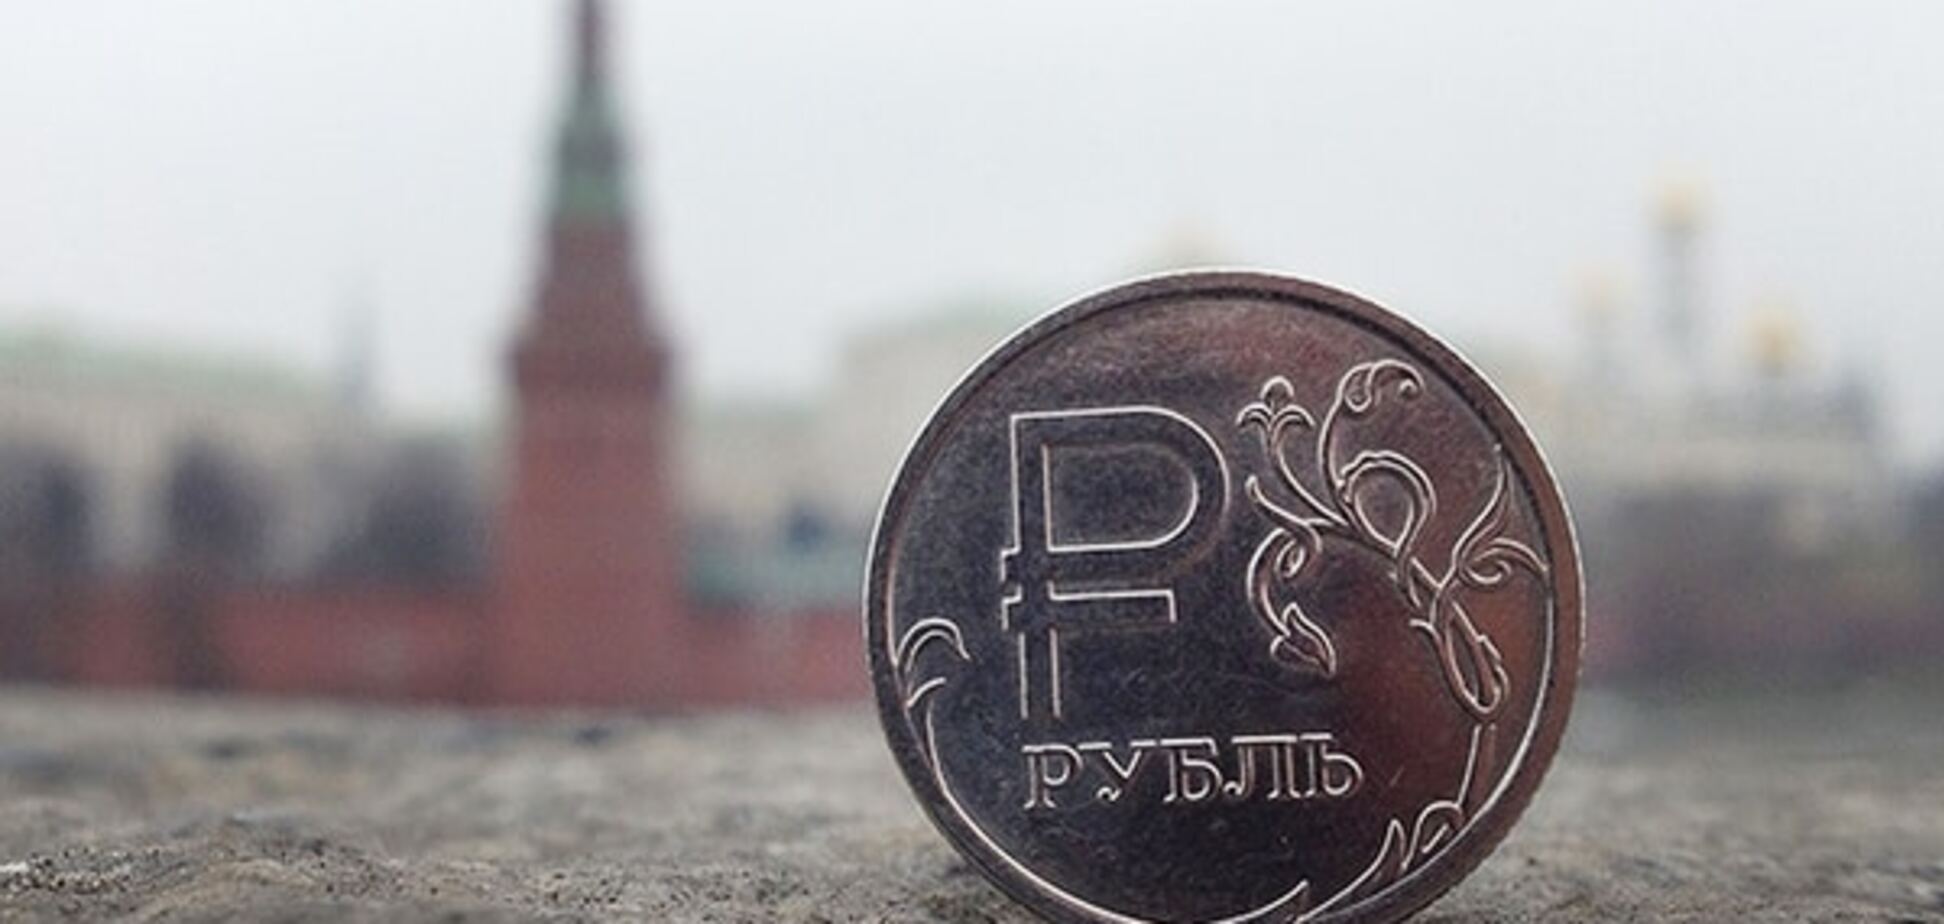 Вітаємо! Експерти глибоко стурбовані з приводу євро по 100 рублів